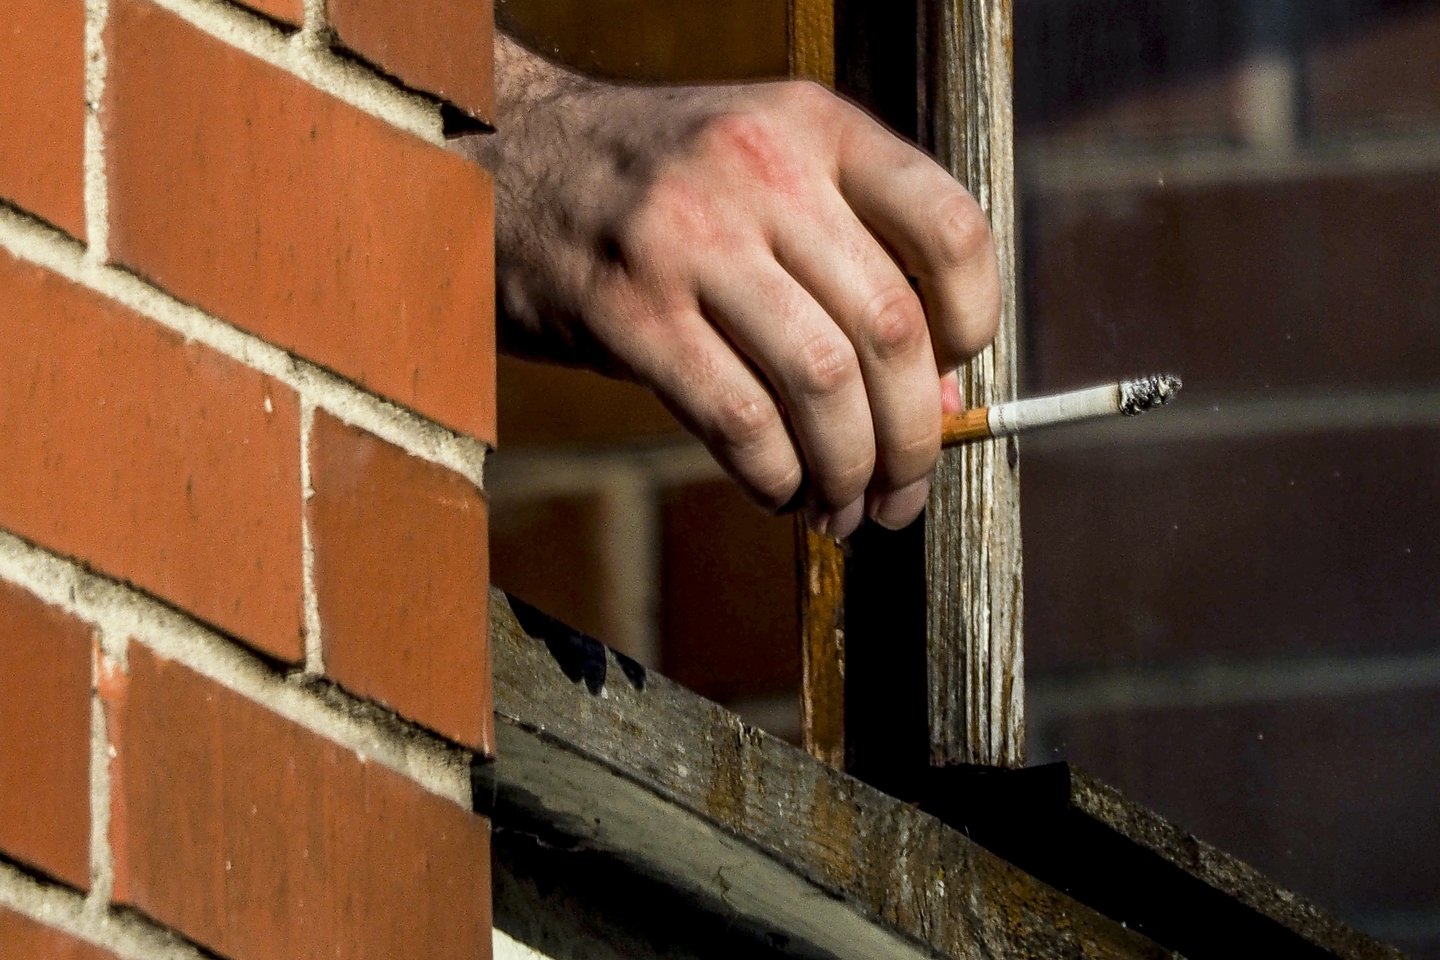 Įstatymą, draudžiantį rūkyti daugiabučių balkonuose ar kotedžų terasose, jei tam prieštarauja bent vienas namo gyventojas, Seimas priėmė dar pernai spalį.<br>Nuotr. iš lrytas.lt archyvo.